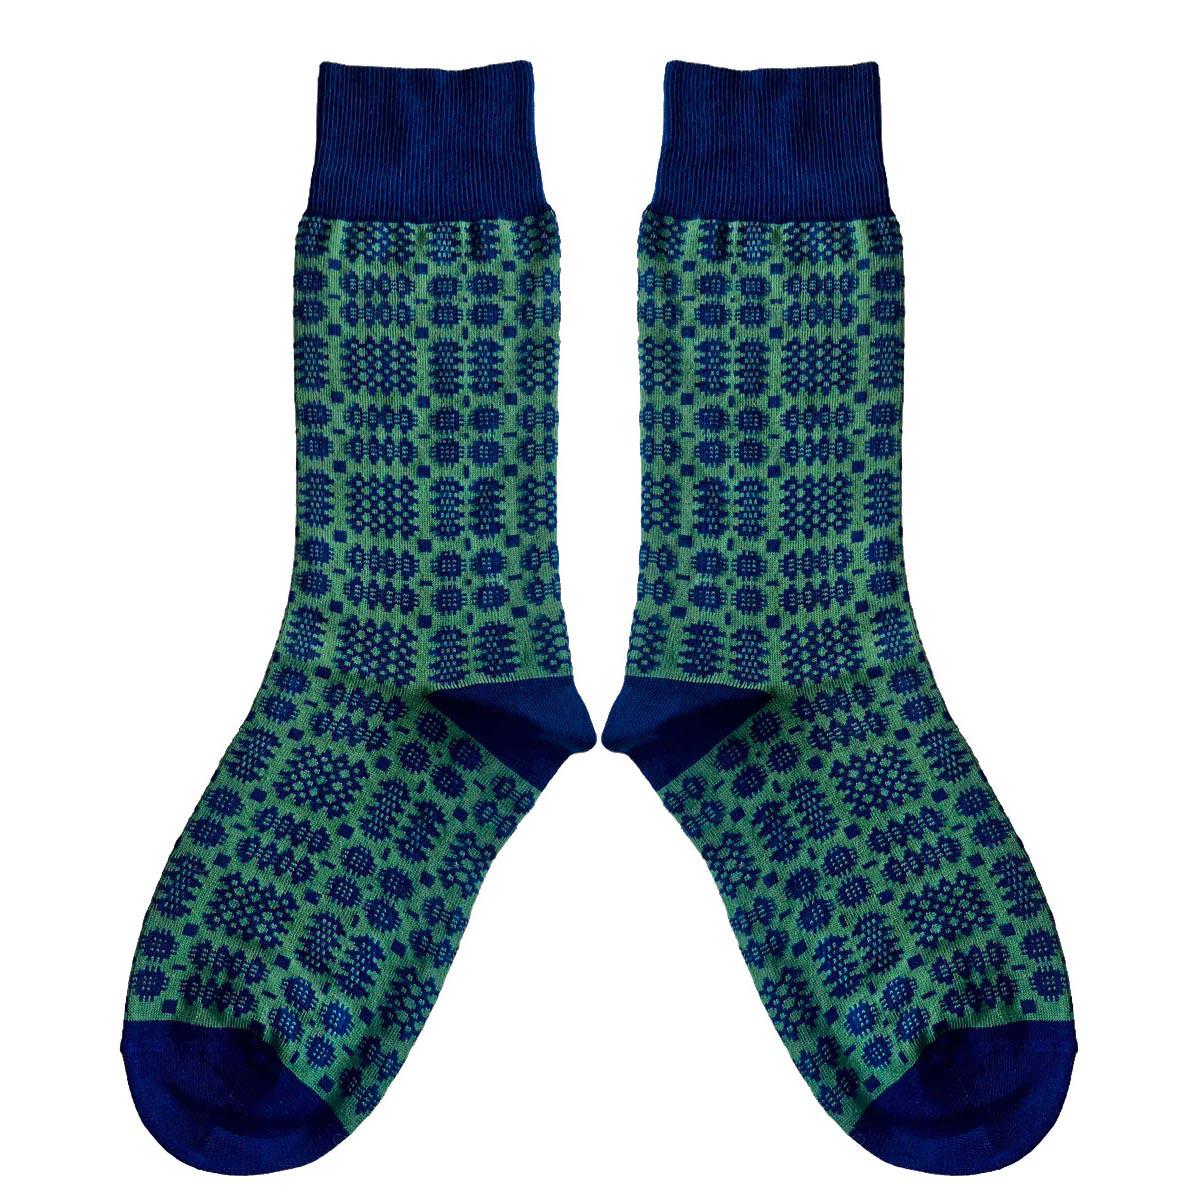 Socks - Mabli Carthen / Welsh Tapestry - Adults Unisex - Pea Green & Blue Ink